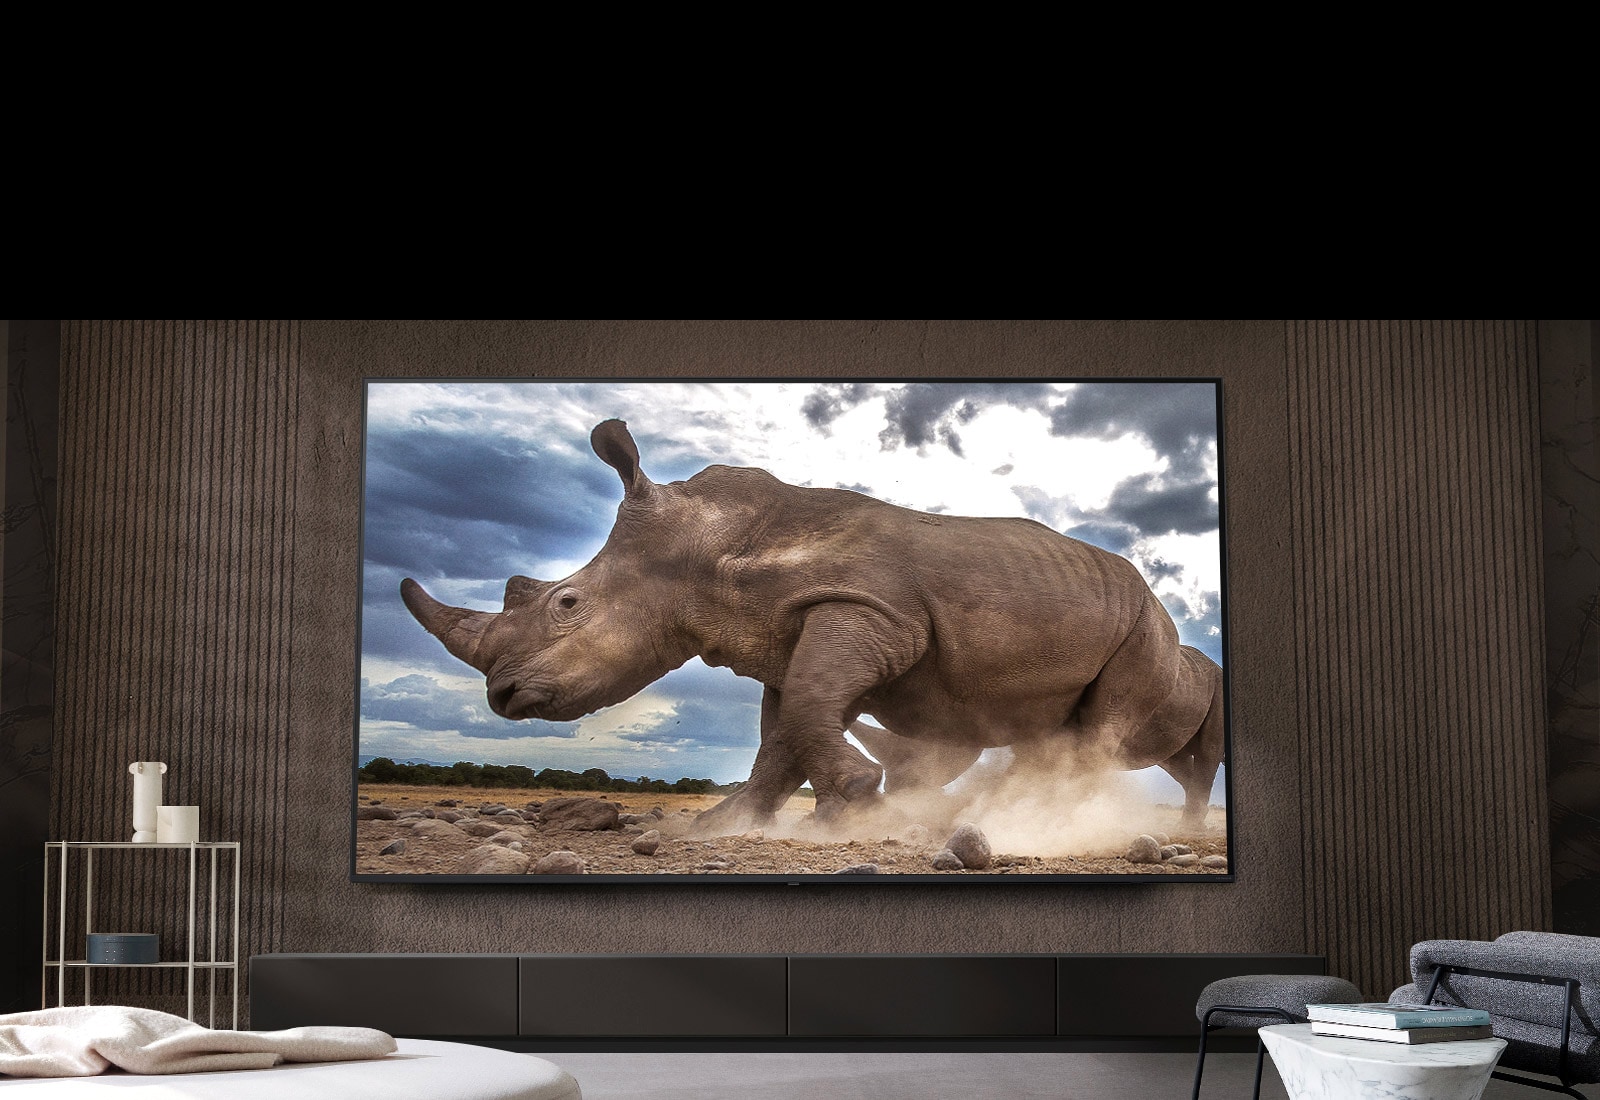 Na ultra veľkom televízore LG na hnedej stene obývačky obklopenej modulárnym nábytkom v krémovej farbe sa zobrazuje nosorožec v prostredí safari.